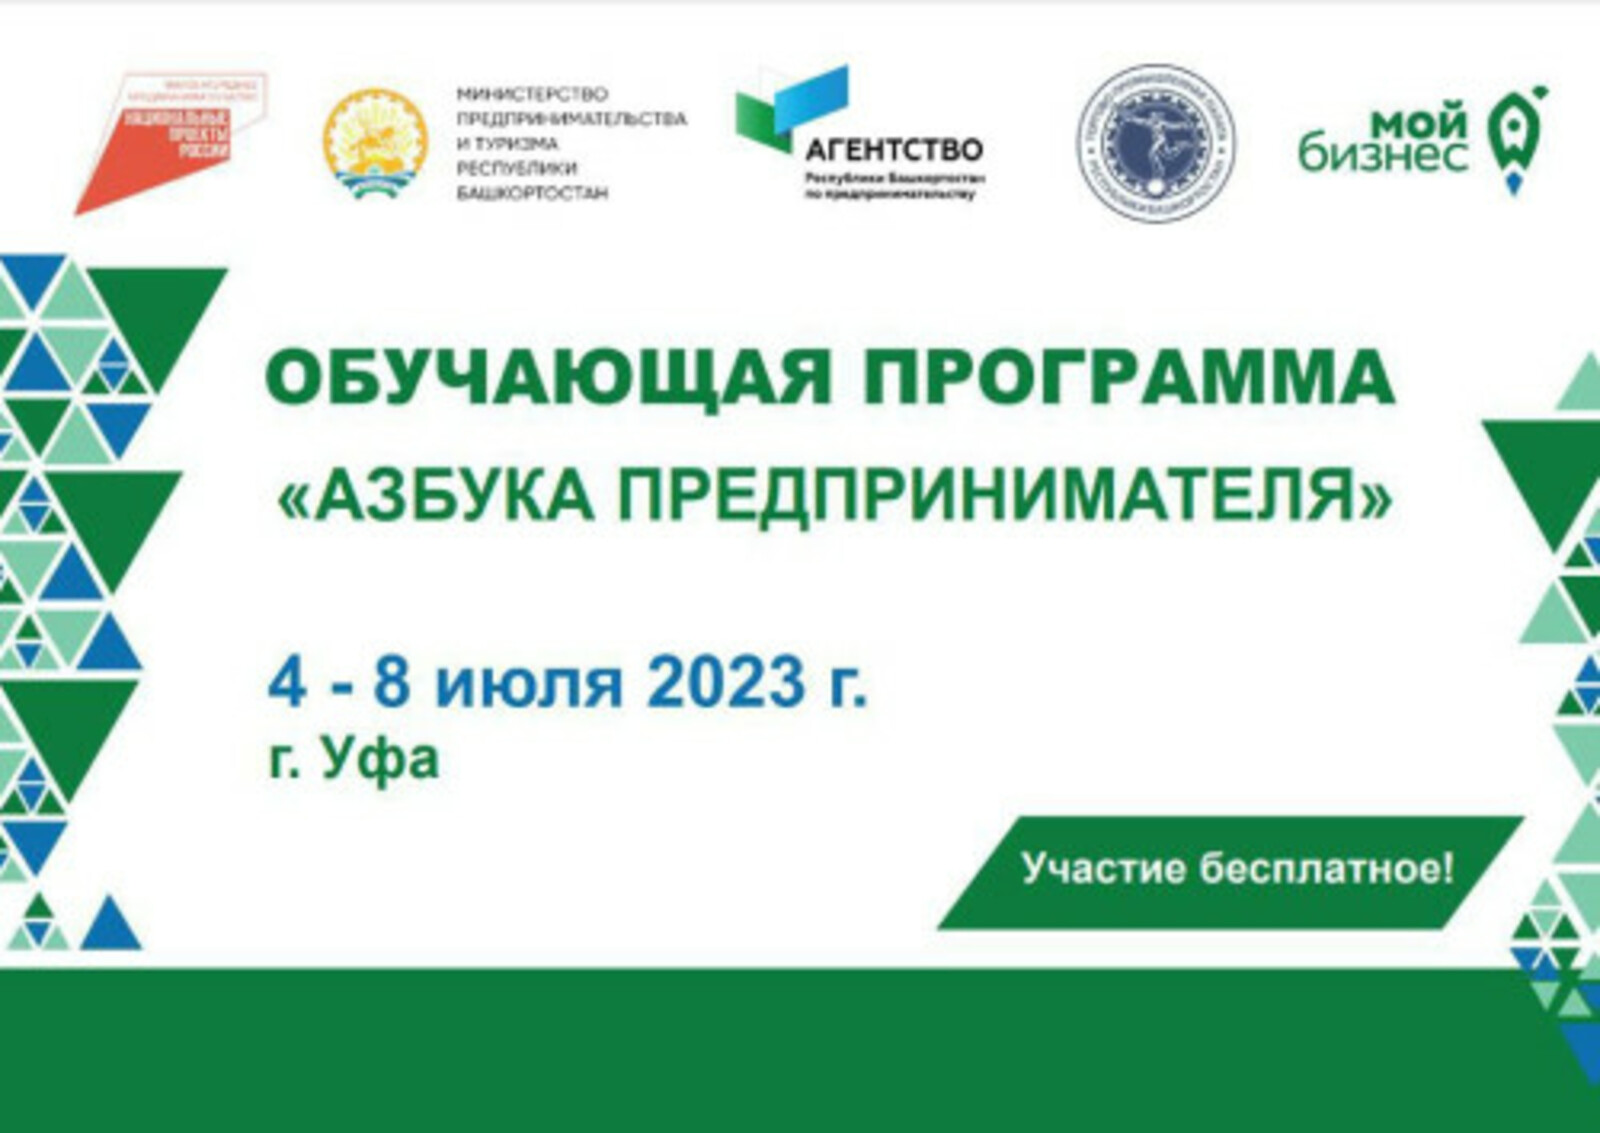 В Башкортостане стартовал прием заявок на образовательную программу «Азбука предпринимателя»